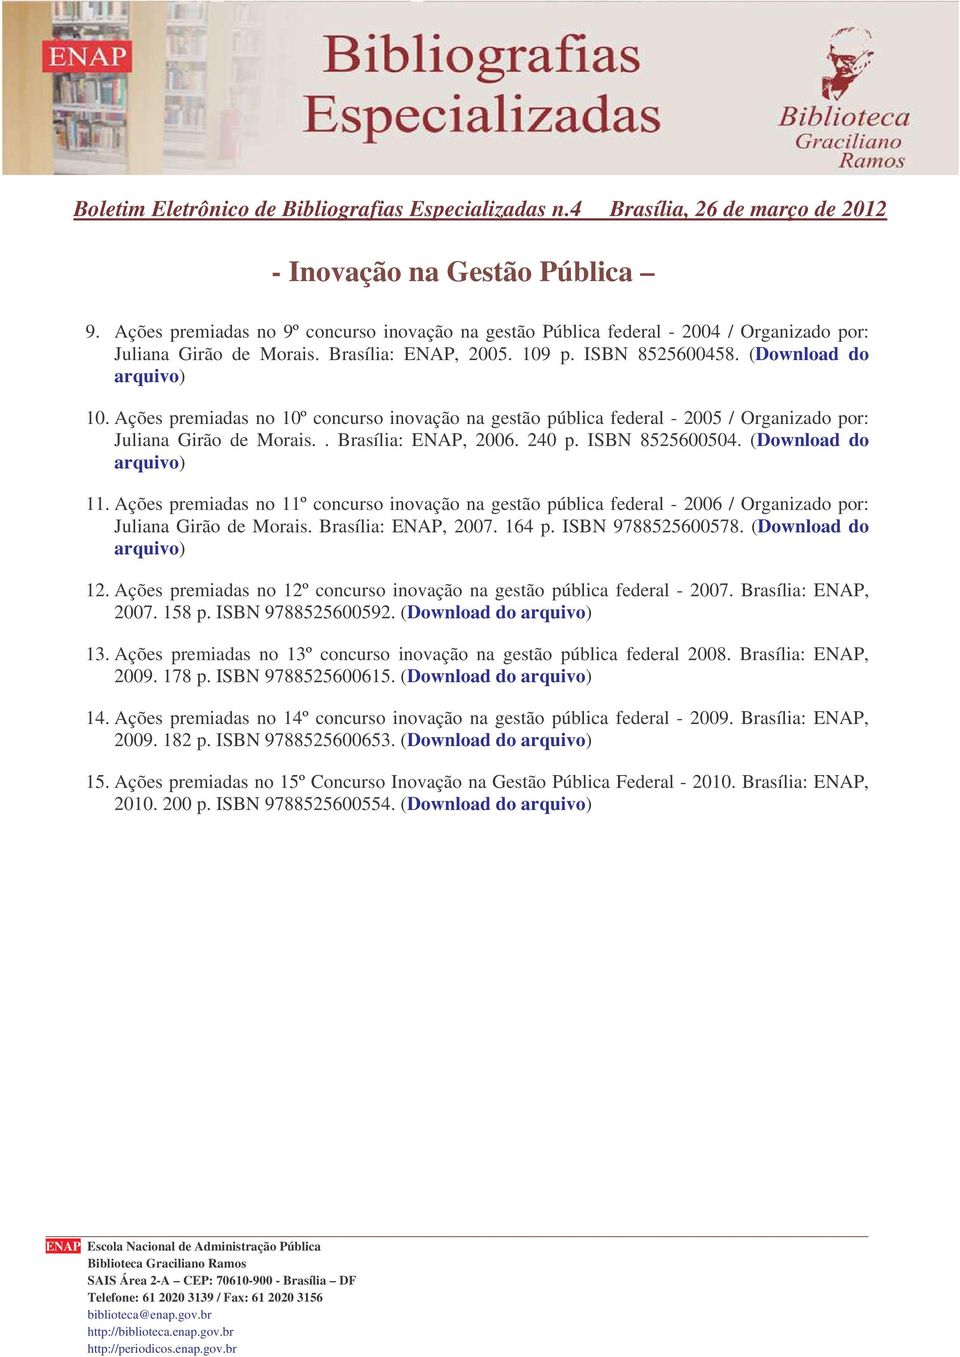 Ações premiadas no 11º concurso inovação na gestão pública federal - 2006 / Organizado por: Juliana Girão de Morais. Brasília: ENAP, 2007. 164 p. ISBN 9788525600578. (Download do arquivo) 12.